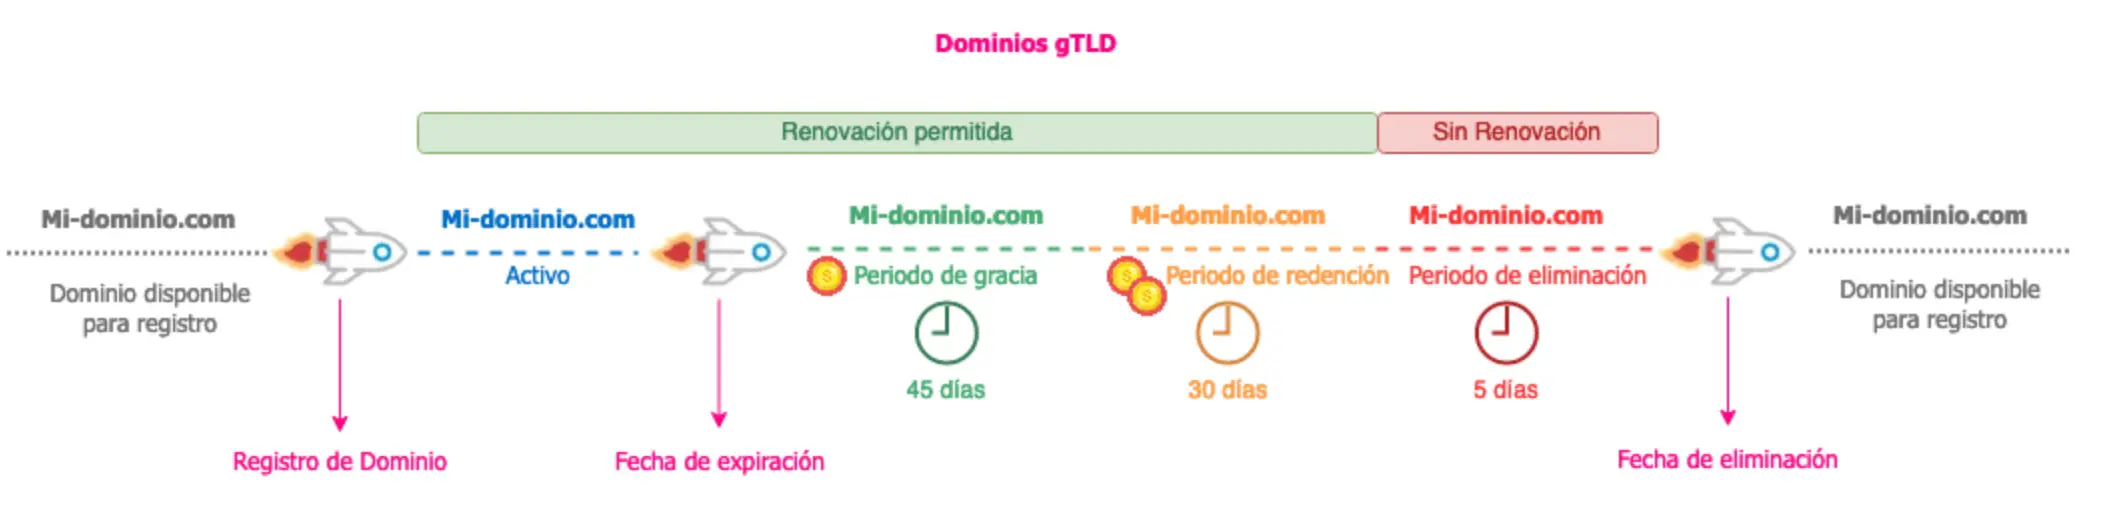 Dominios-gTLD-1.webp